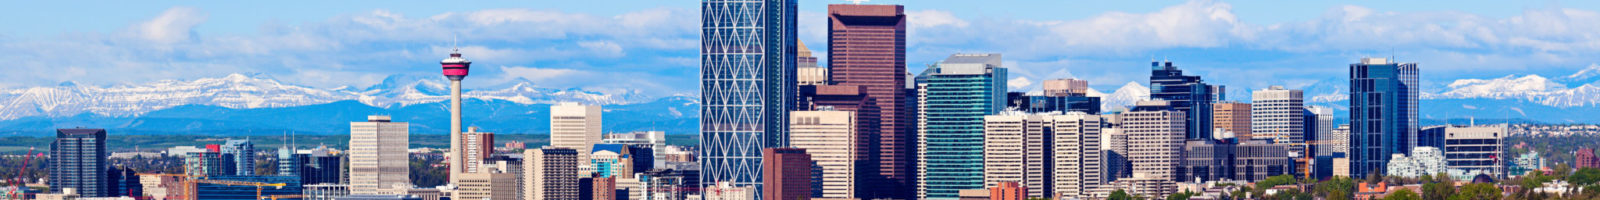 Best Commercial Insurance Broker Calgary - ALIGNED Insurance Brokers